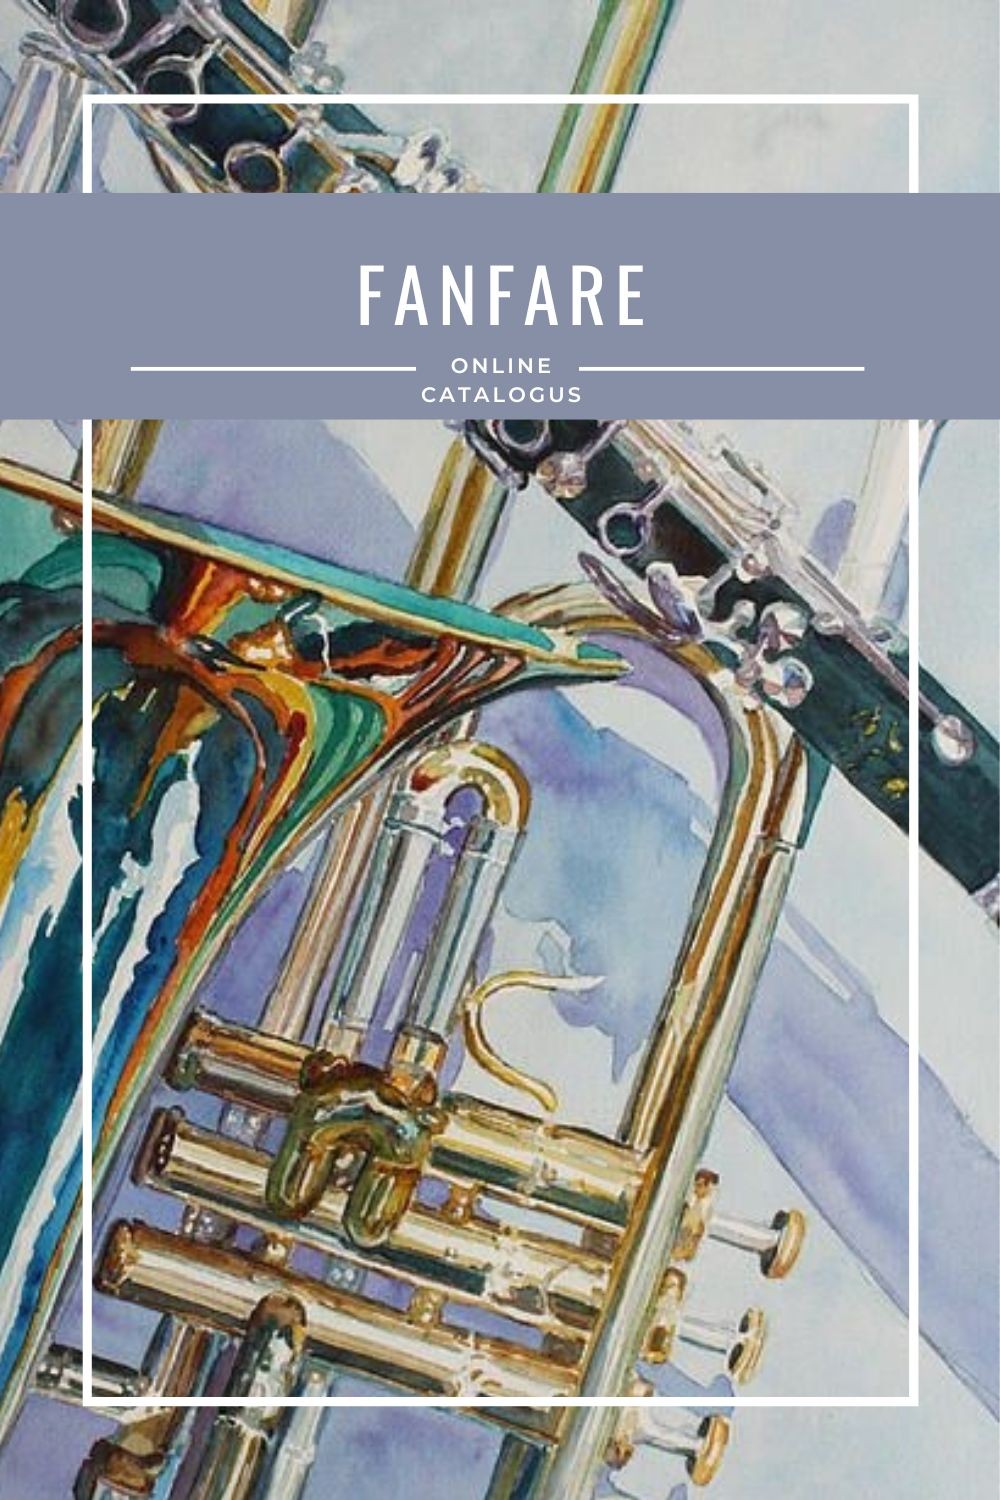 Fanfare online catalogus